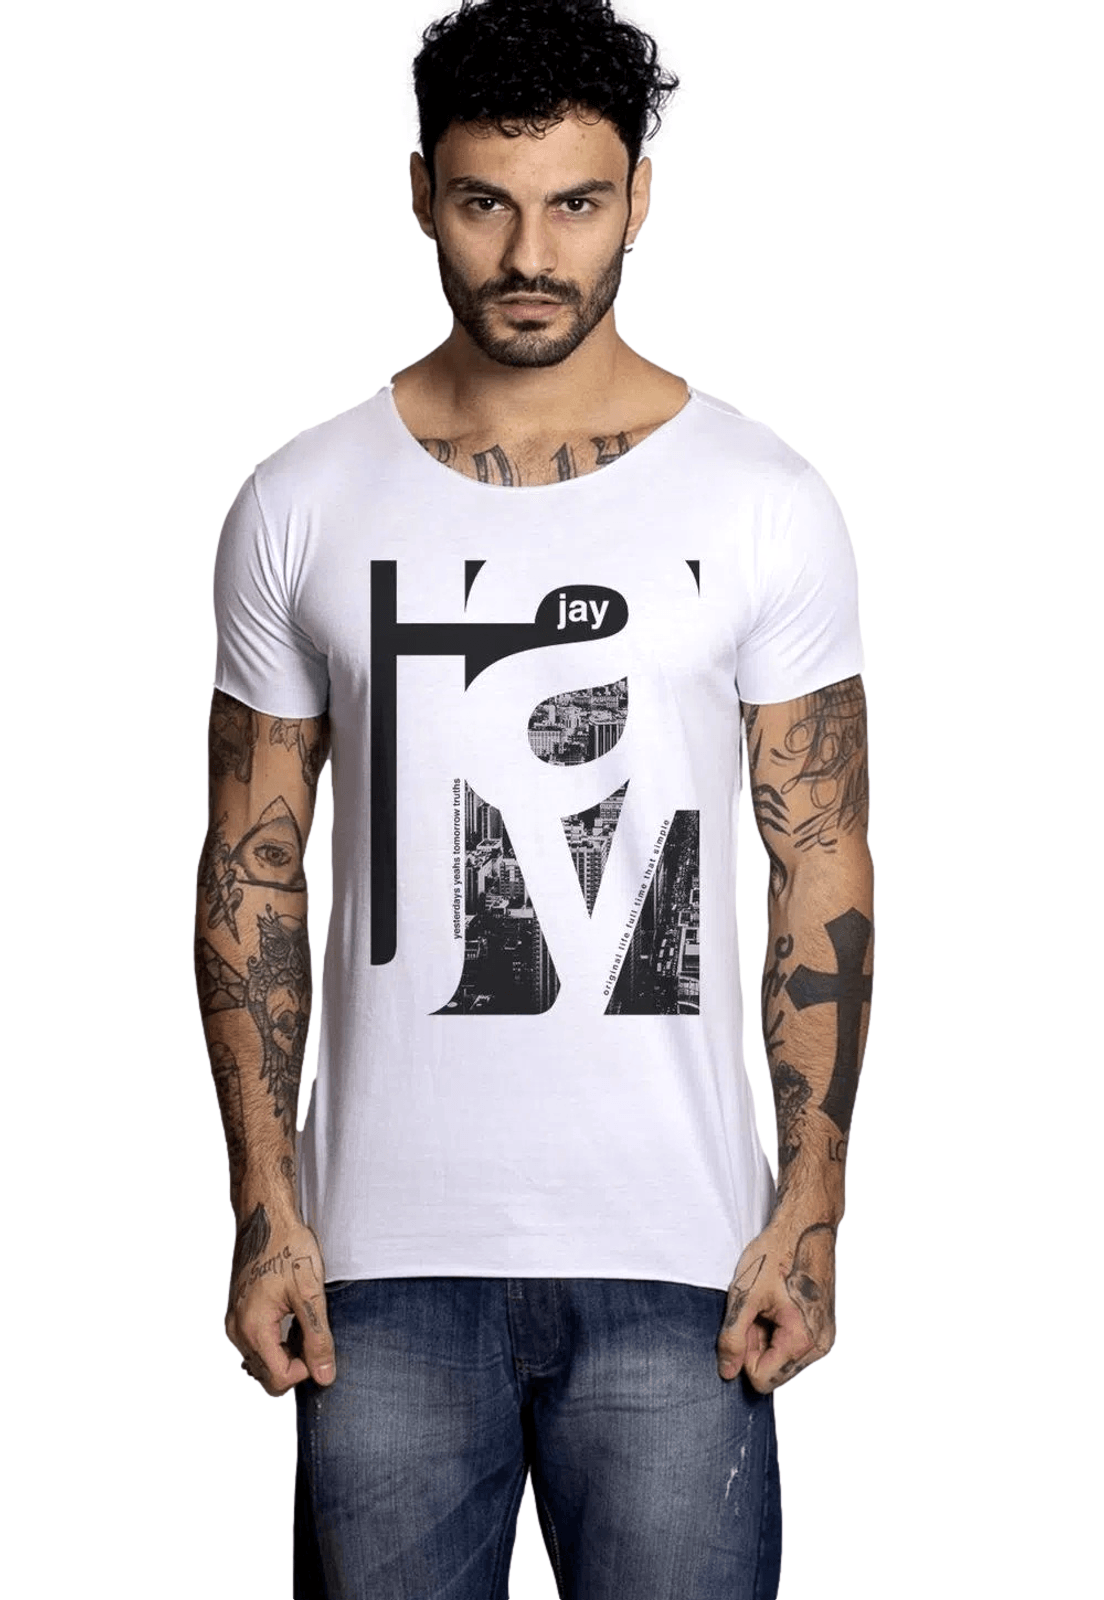 Jay-Jay-Camiseta-Jay-Jay-Corte-a-Fio-Original-Life-Branco-2733-9887059-1-zoom_clipped_rev_1